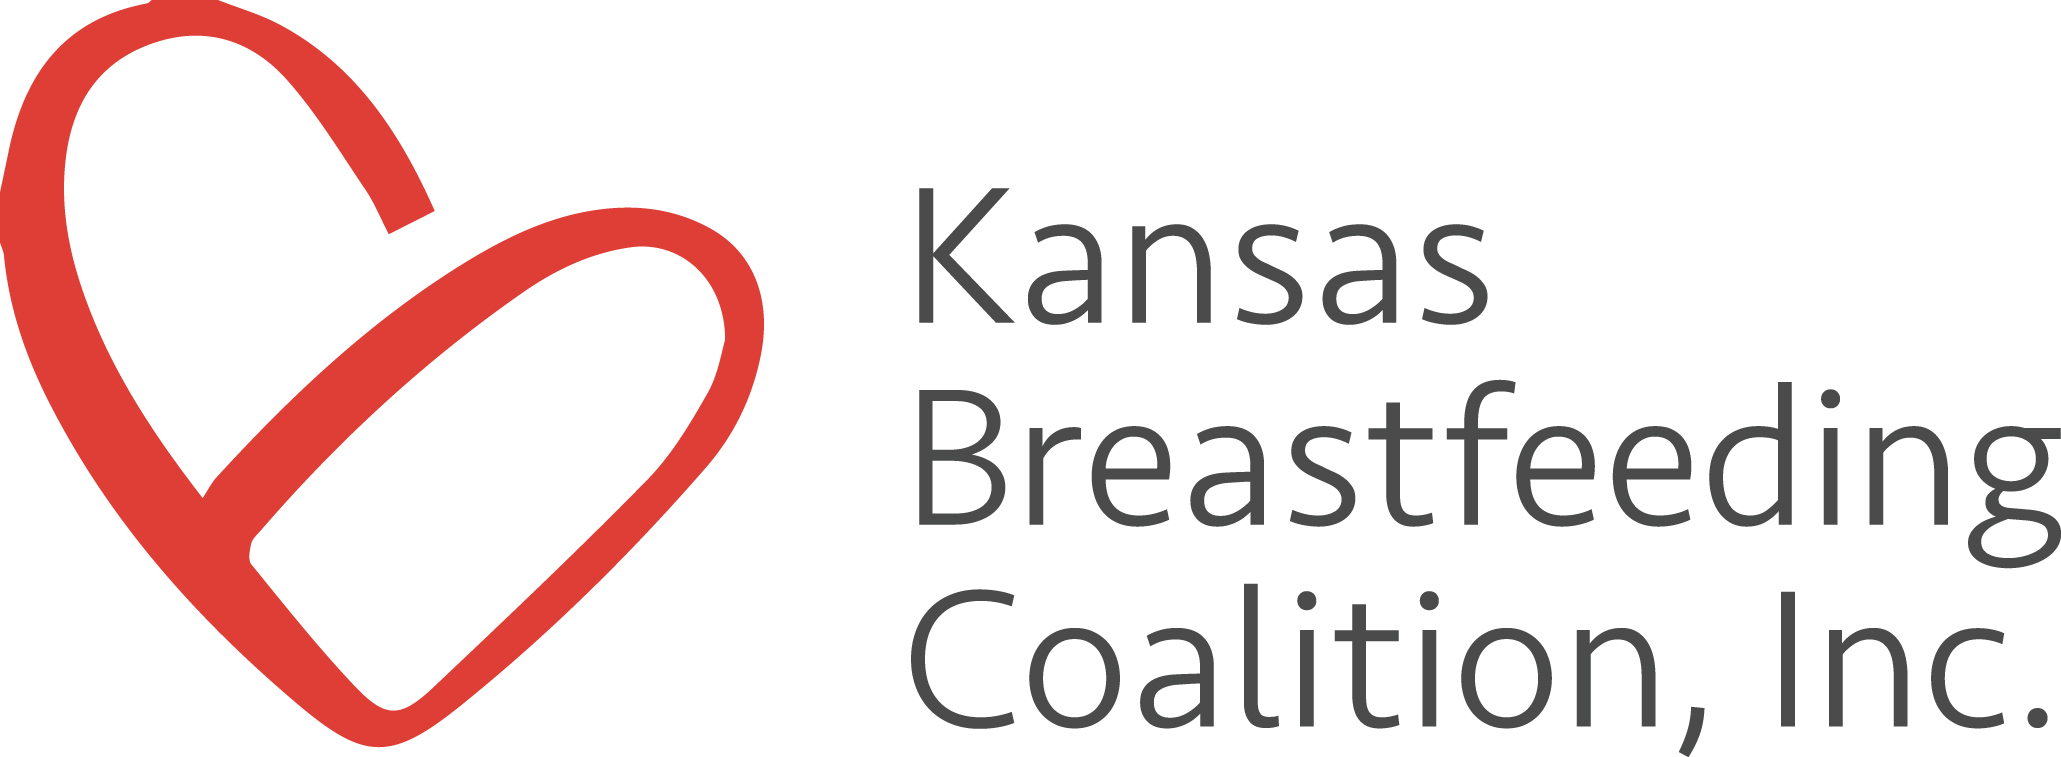 Kansas Breastfeeding Coalition